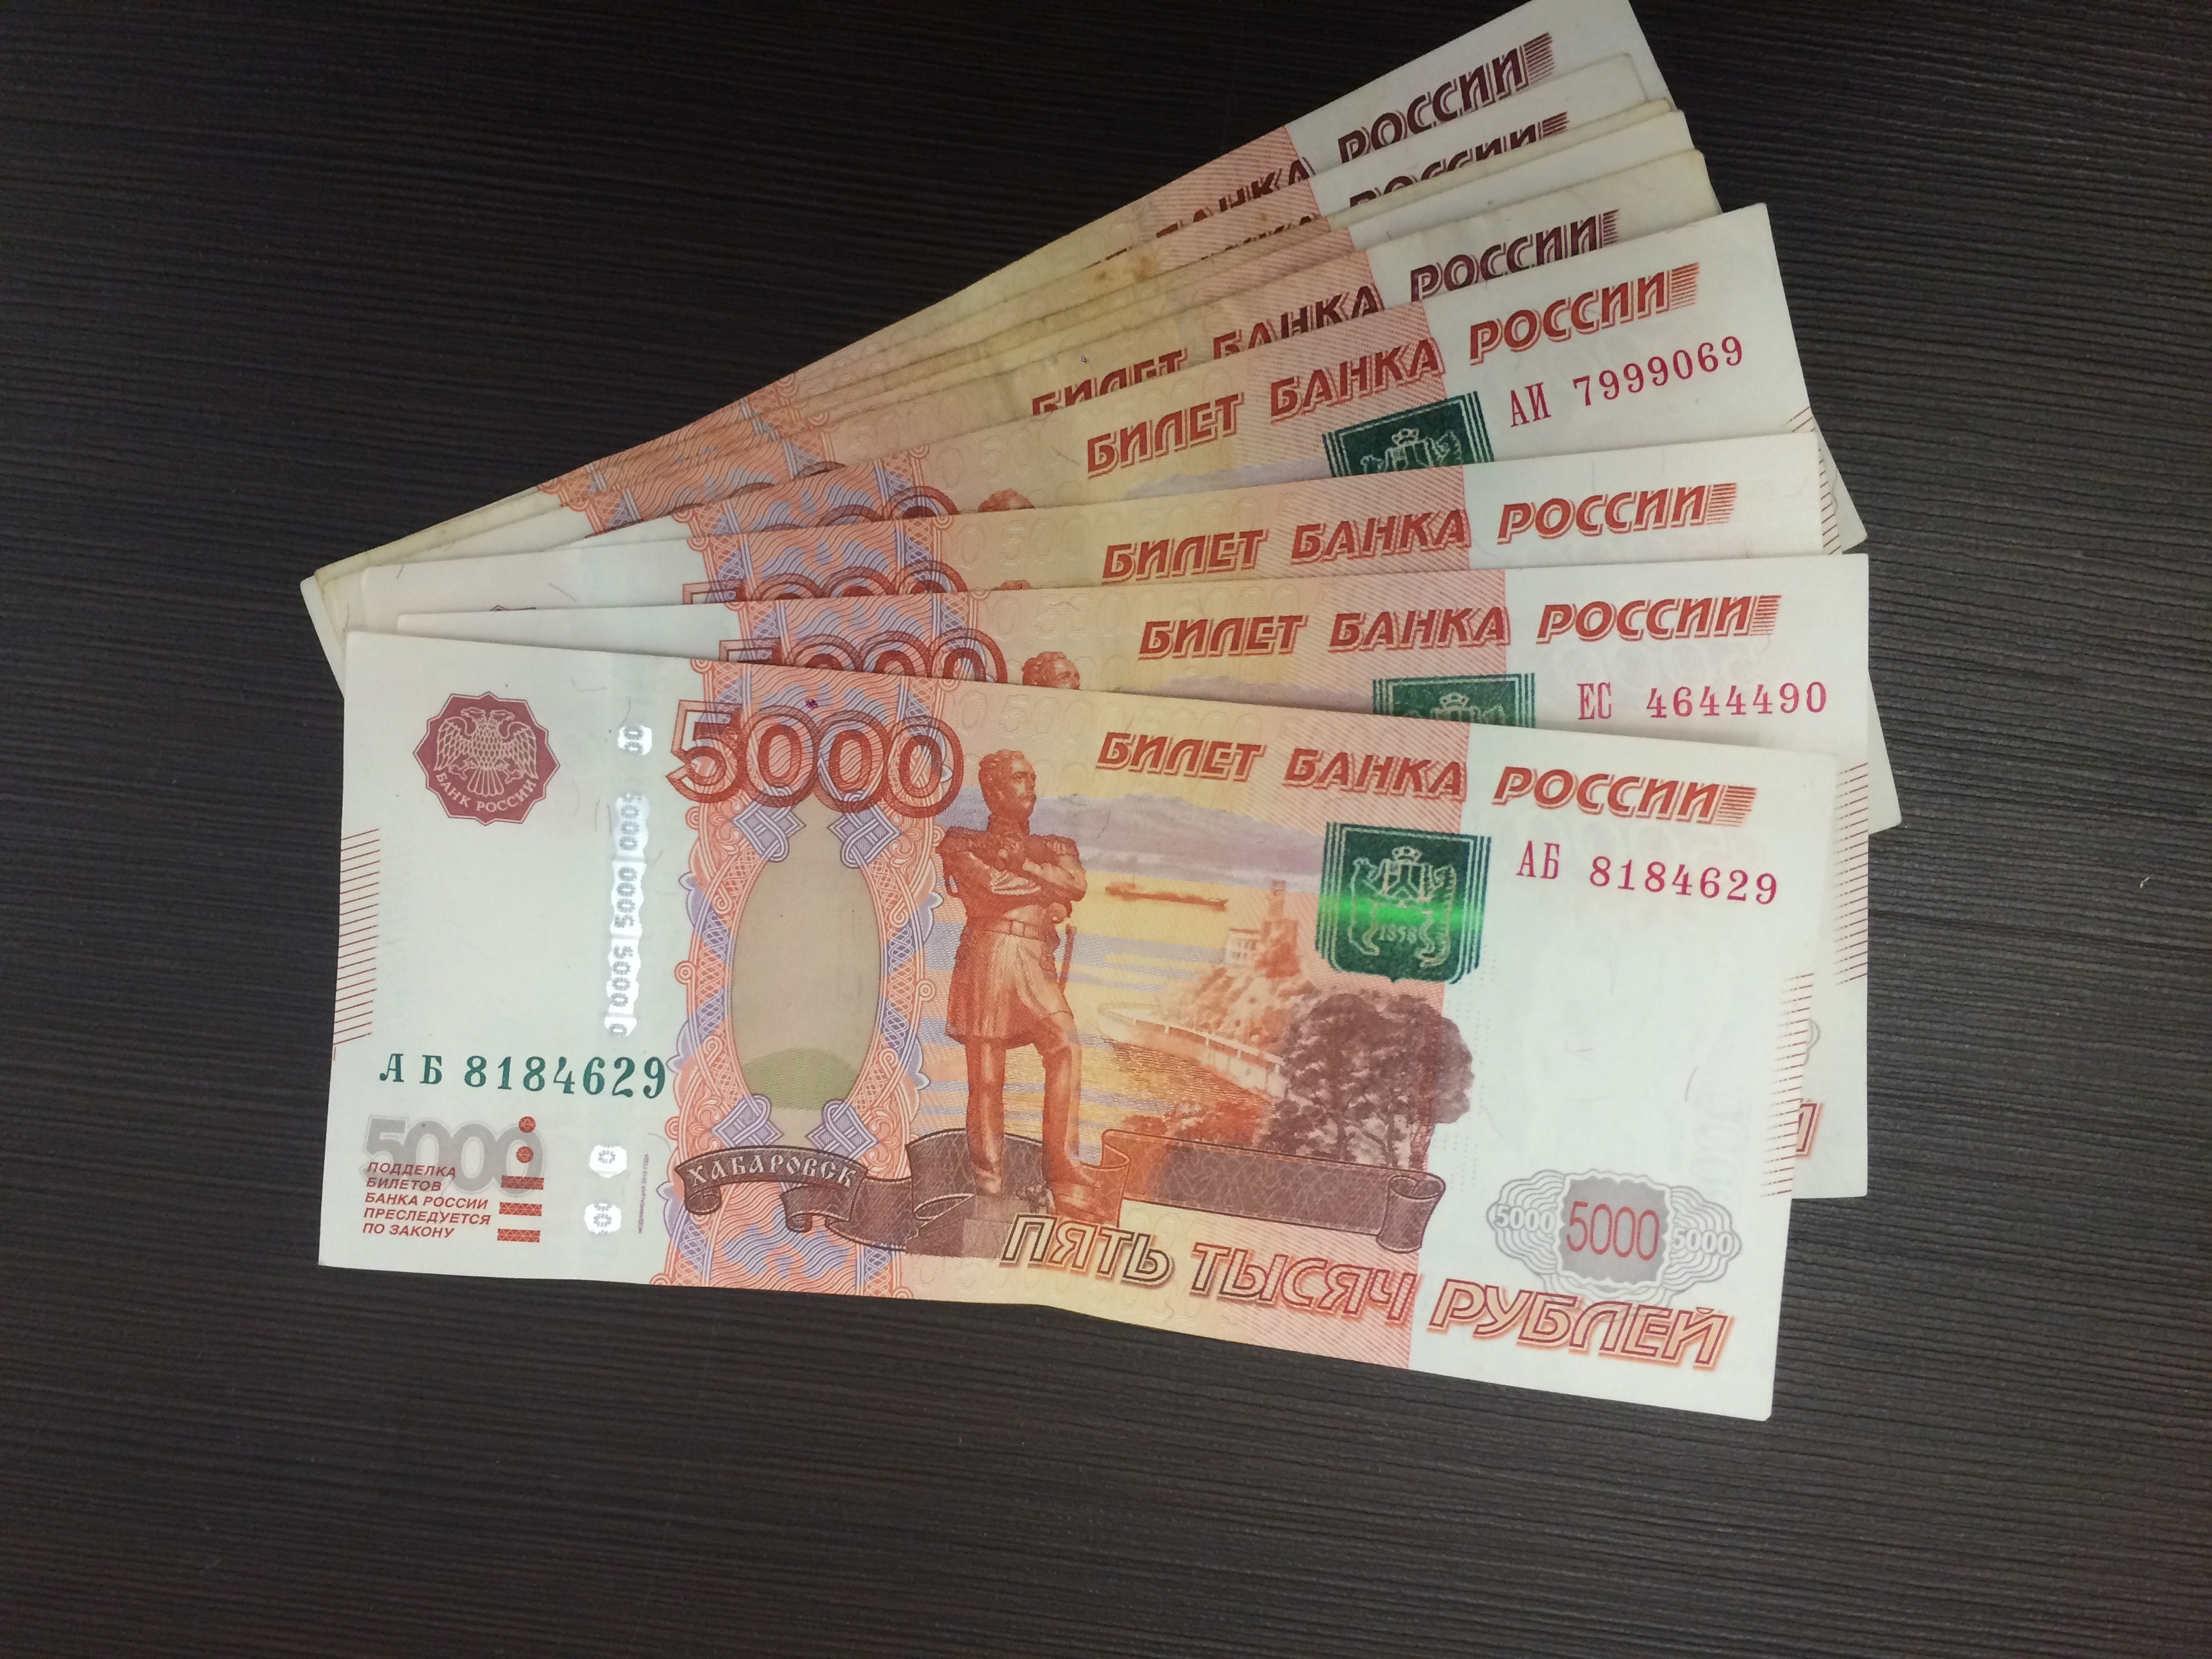 Плюс 2000 рублей с квартиры. В квитанциях ЖКХ грядет новый неприятный сюрприз